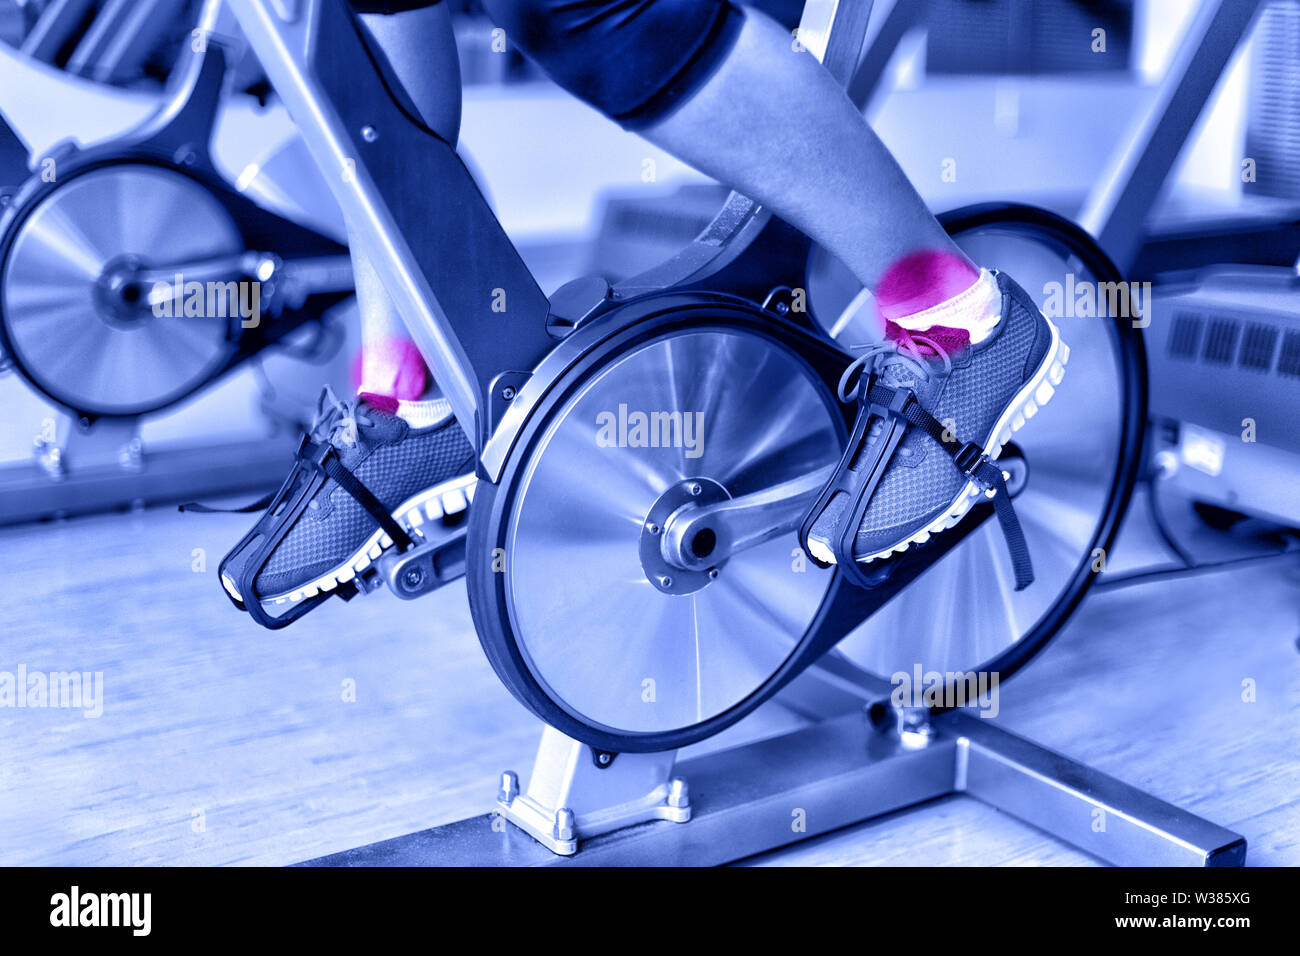 Sportverletzung - Knöchel Schmerz während der Ausbildung auf dem spinningbike im Fitnessstudio. Nahaufnahme der Beine der weiblichen Athleten mit Fahrrad Maschine im Fitnesscenter in Blau monochromatischen Filter. Stockfoto